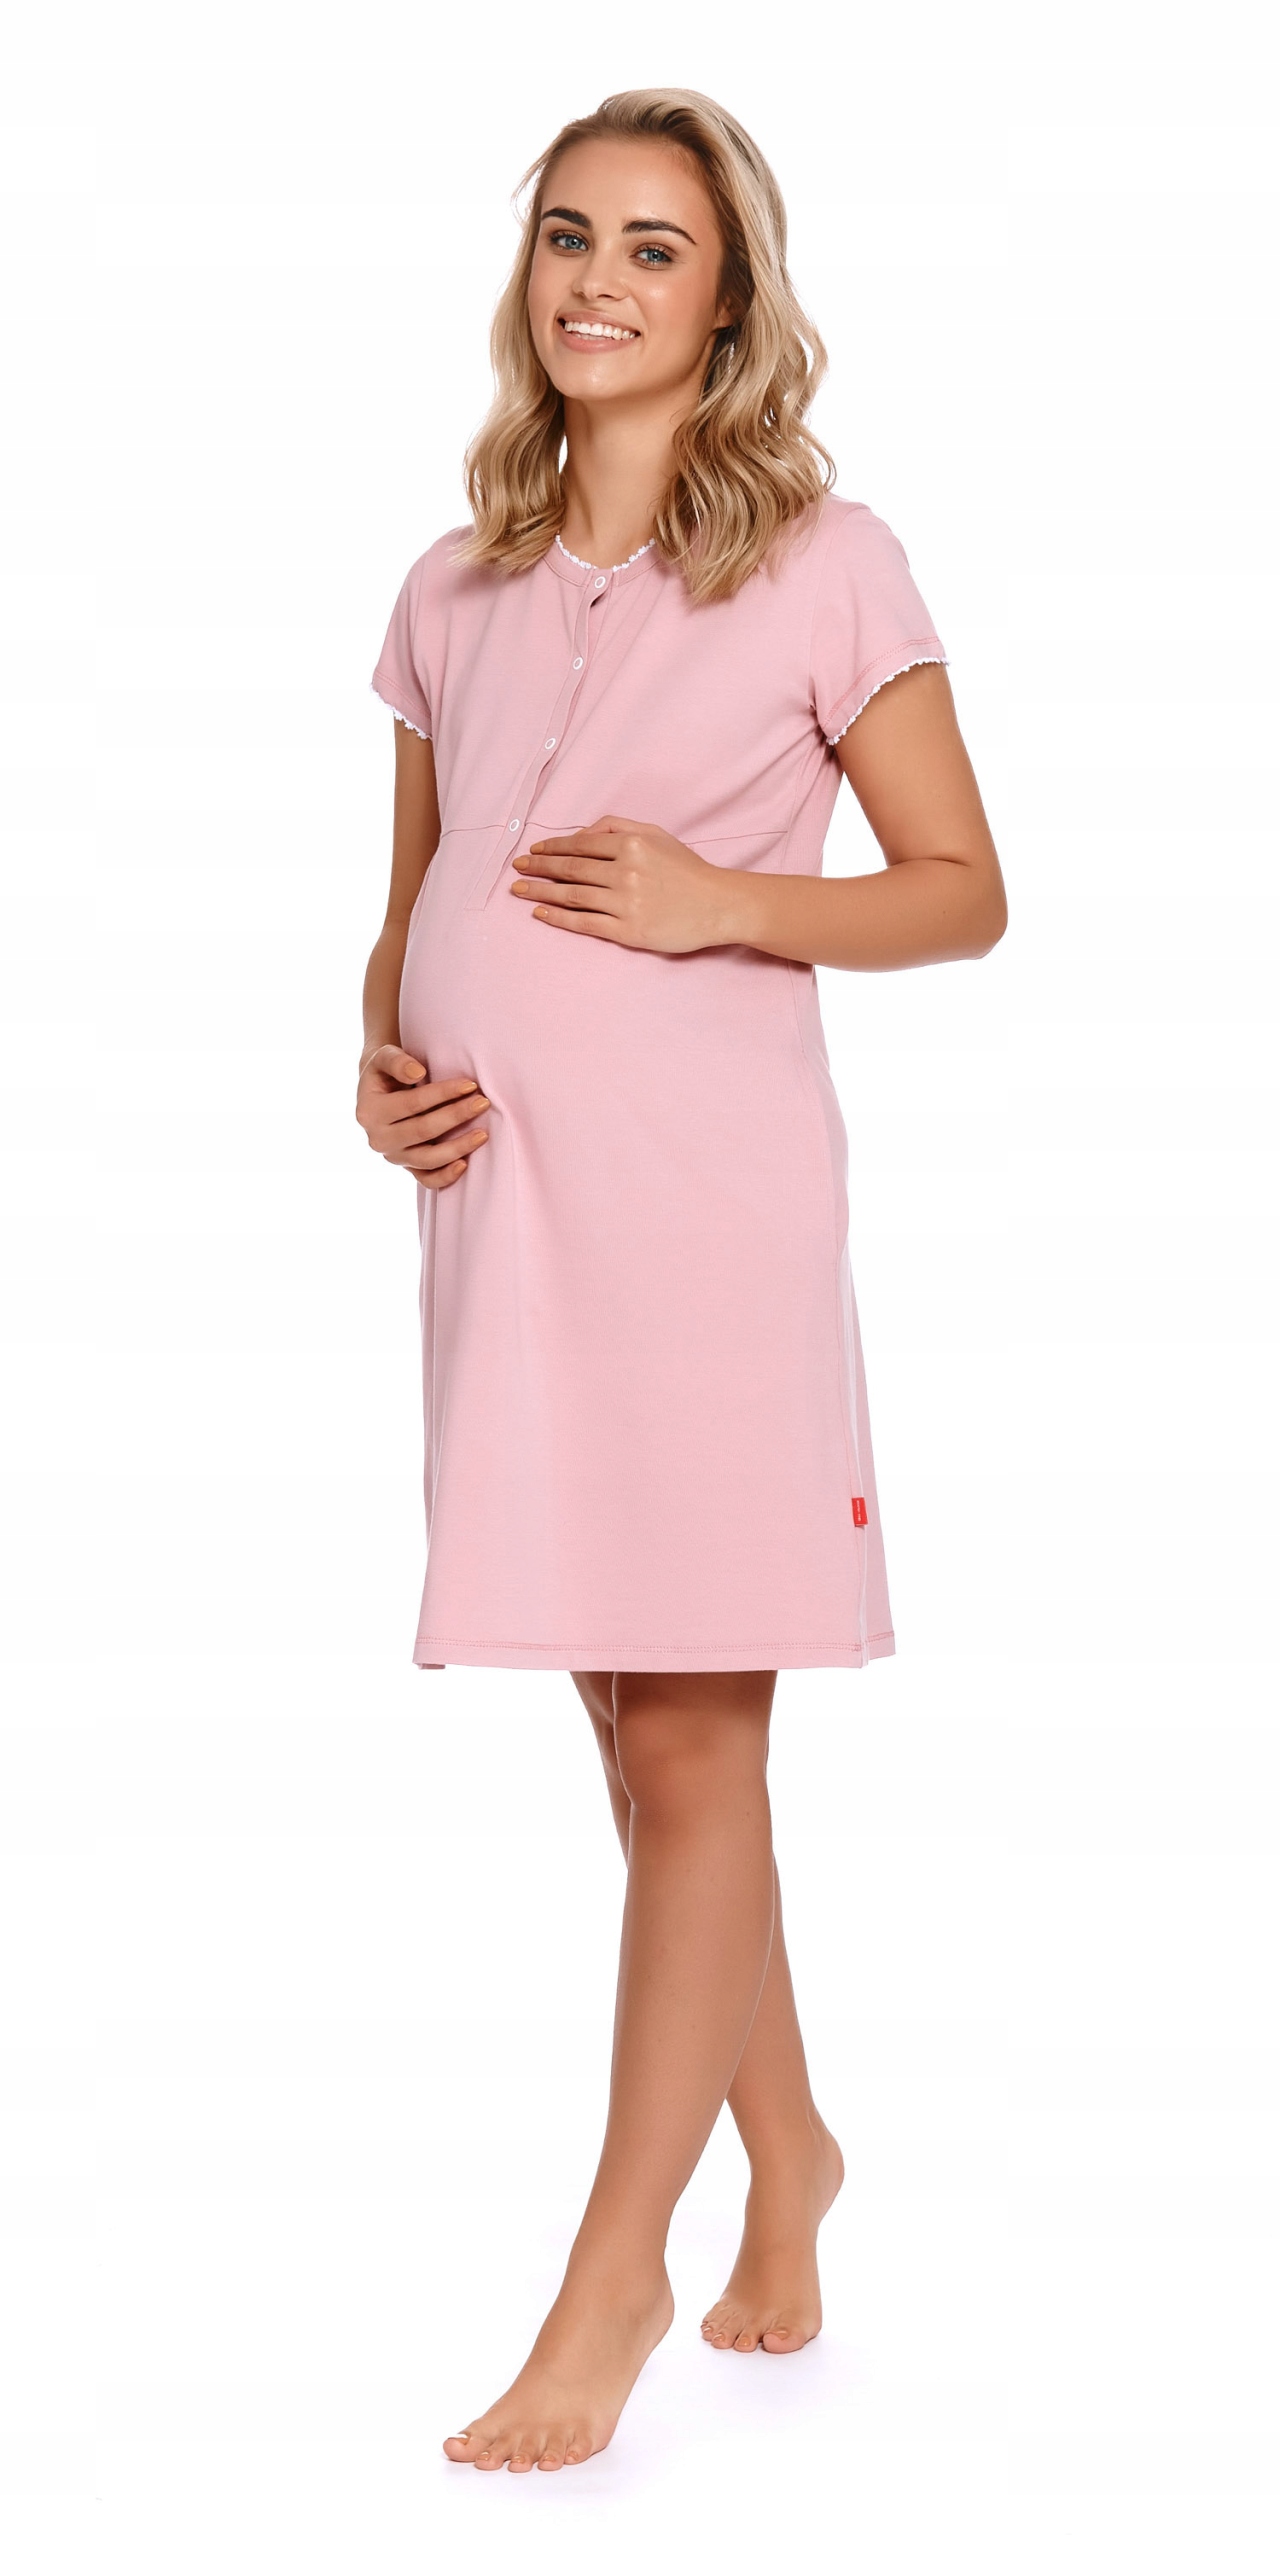 Ночная рубашка для кормления, гладкая, для беременных, пуговицы M, розовый